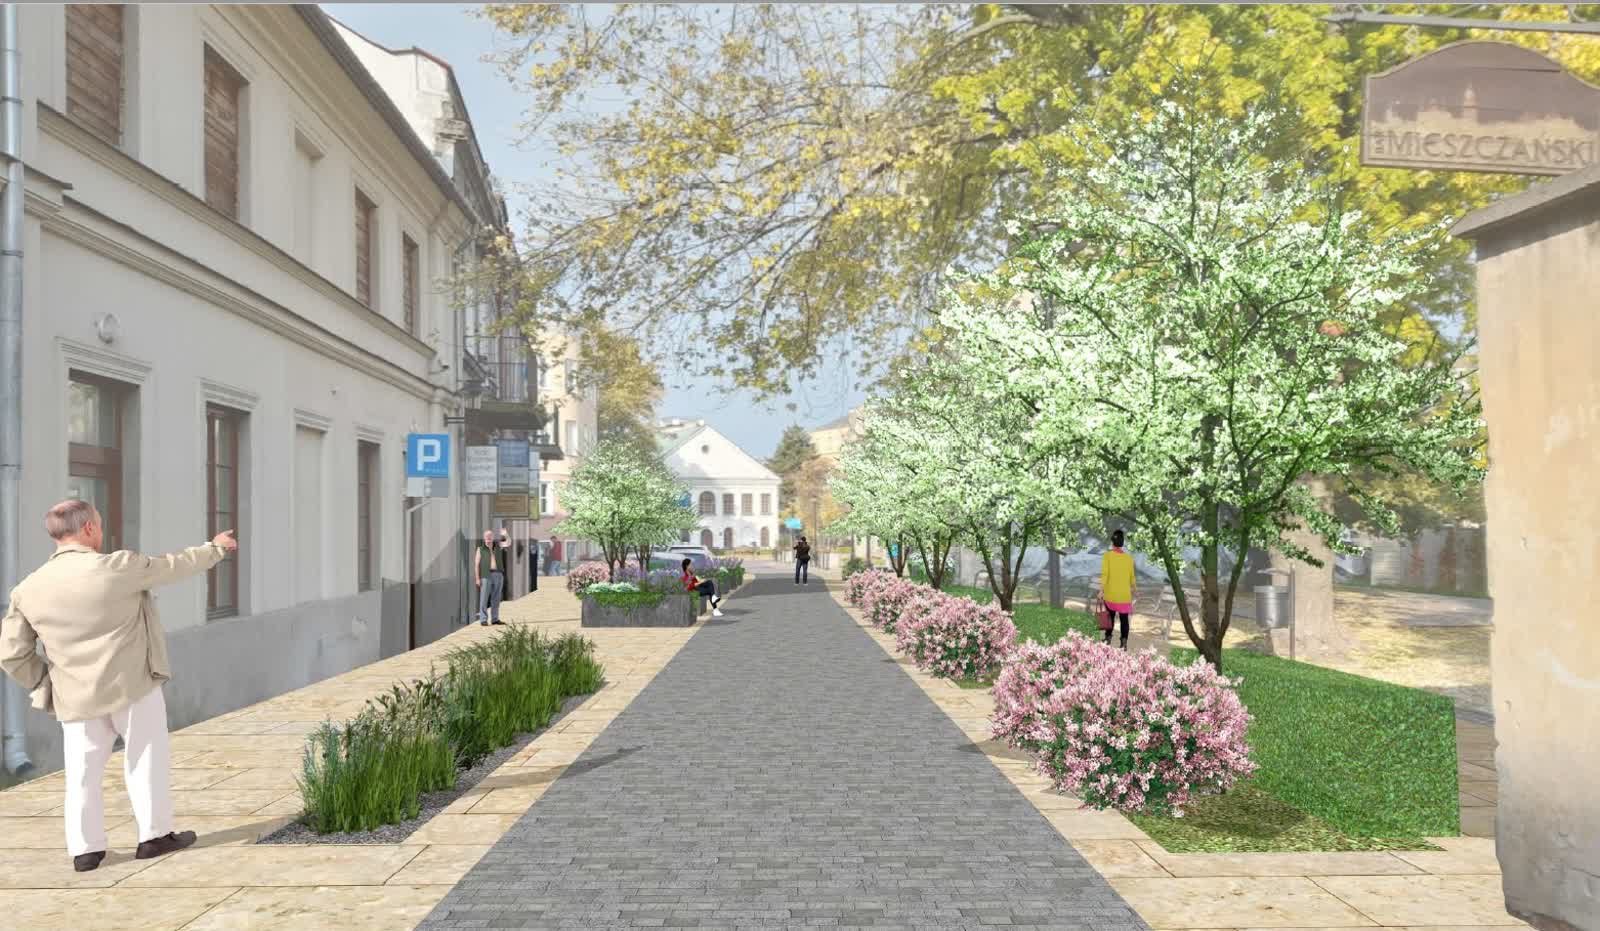 Woonerfy în Lublin?  S-au încheiat consultările privind dezvoltarea străzilor din centrul orașului – Polskie Radio Lublin –